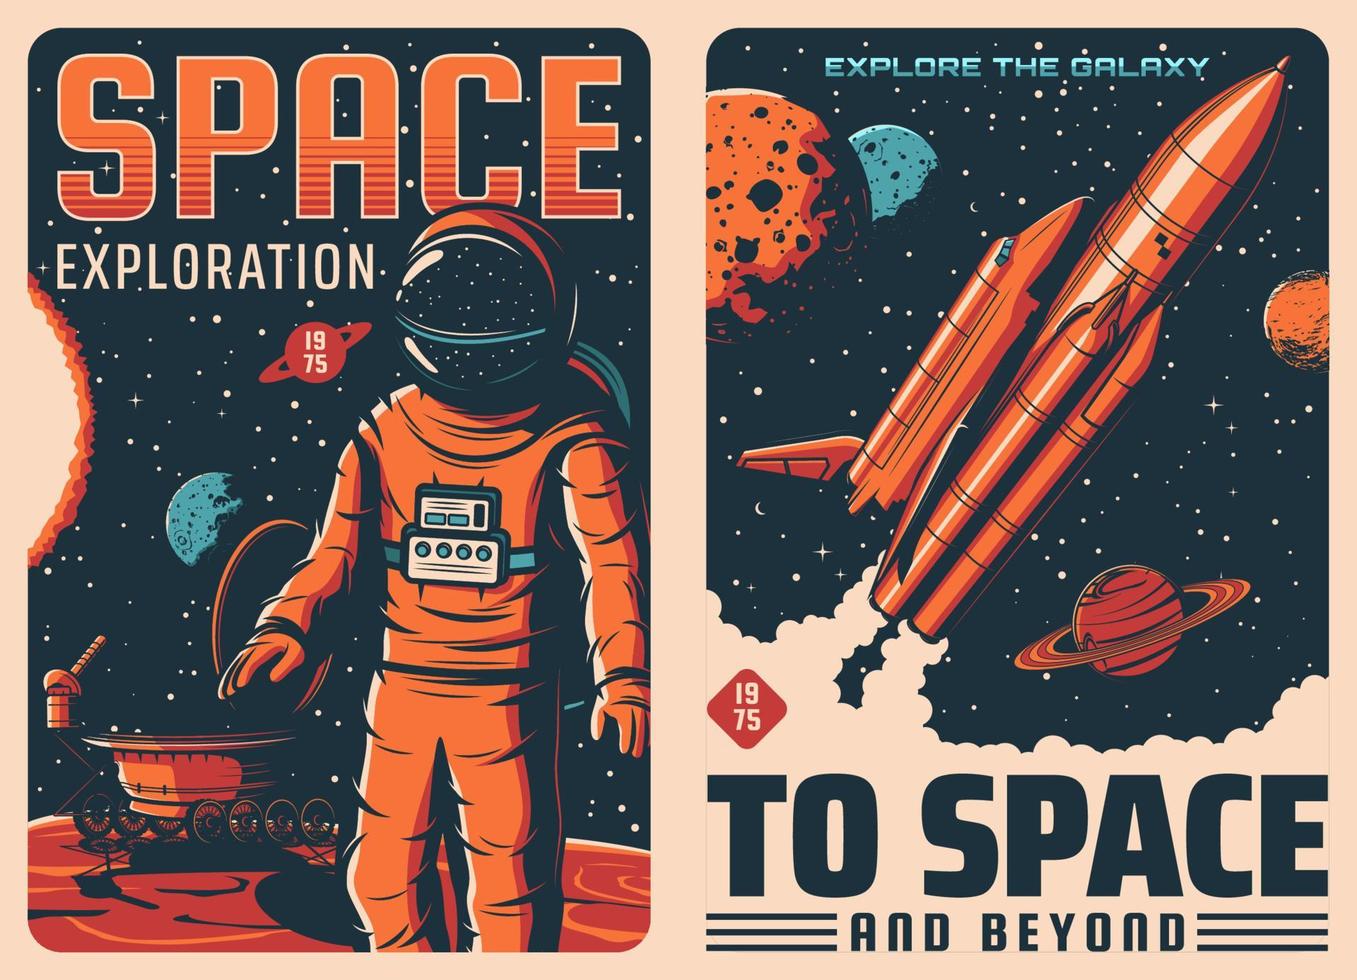 exploration spatiale, astronaute et affiches de vaisseau spatial vecteur